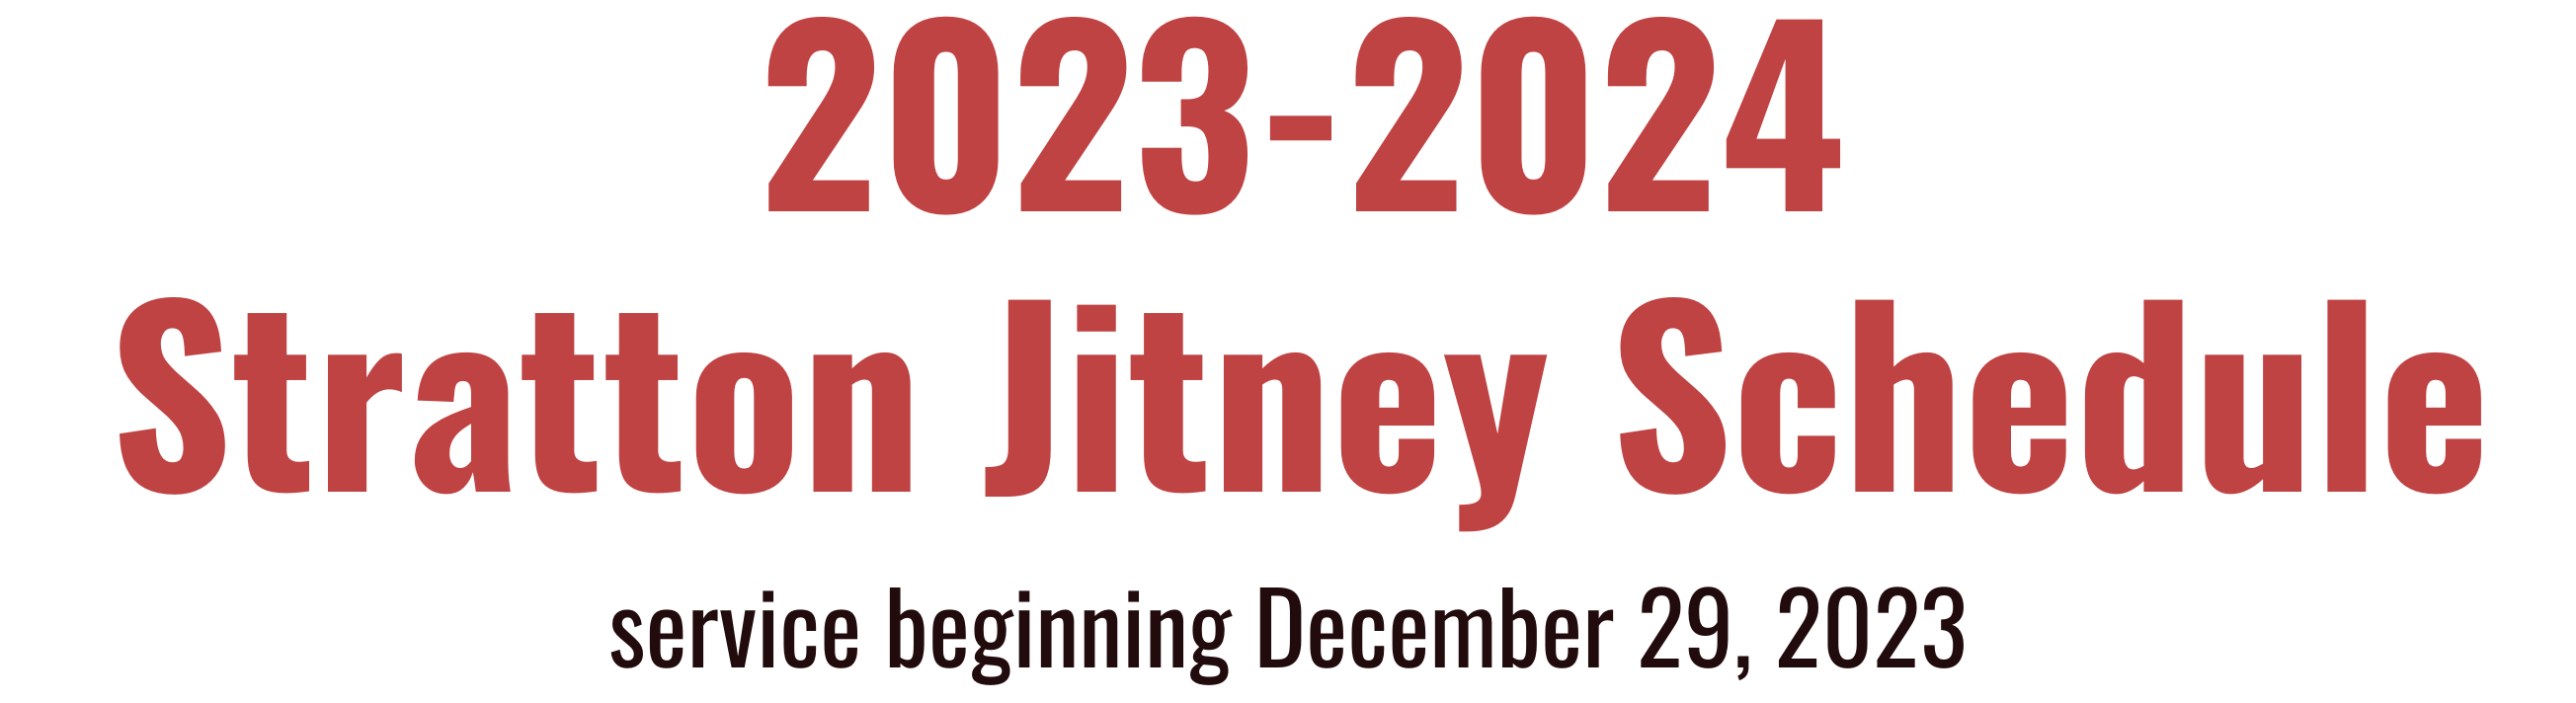 2021-2022 Stratton Jitney Schedule